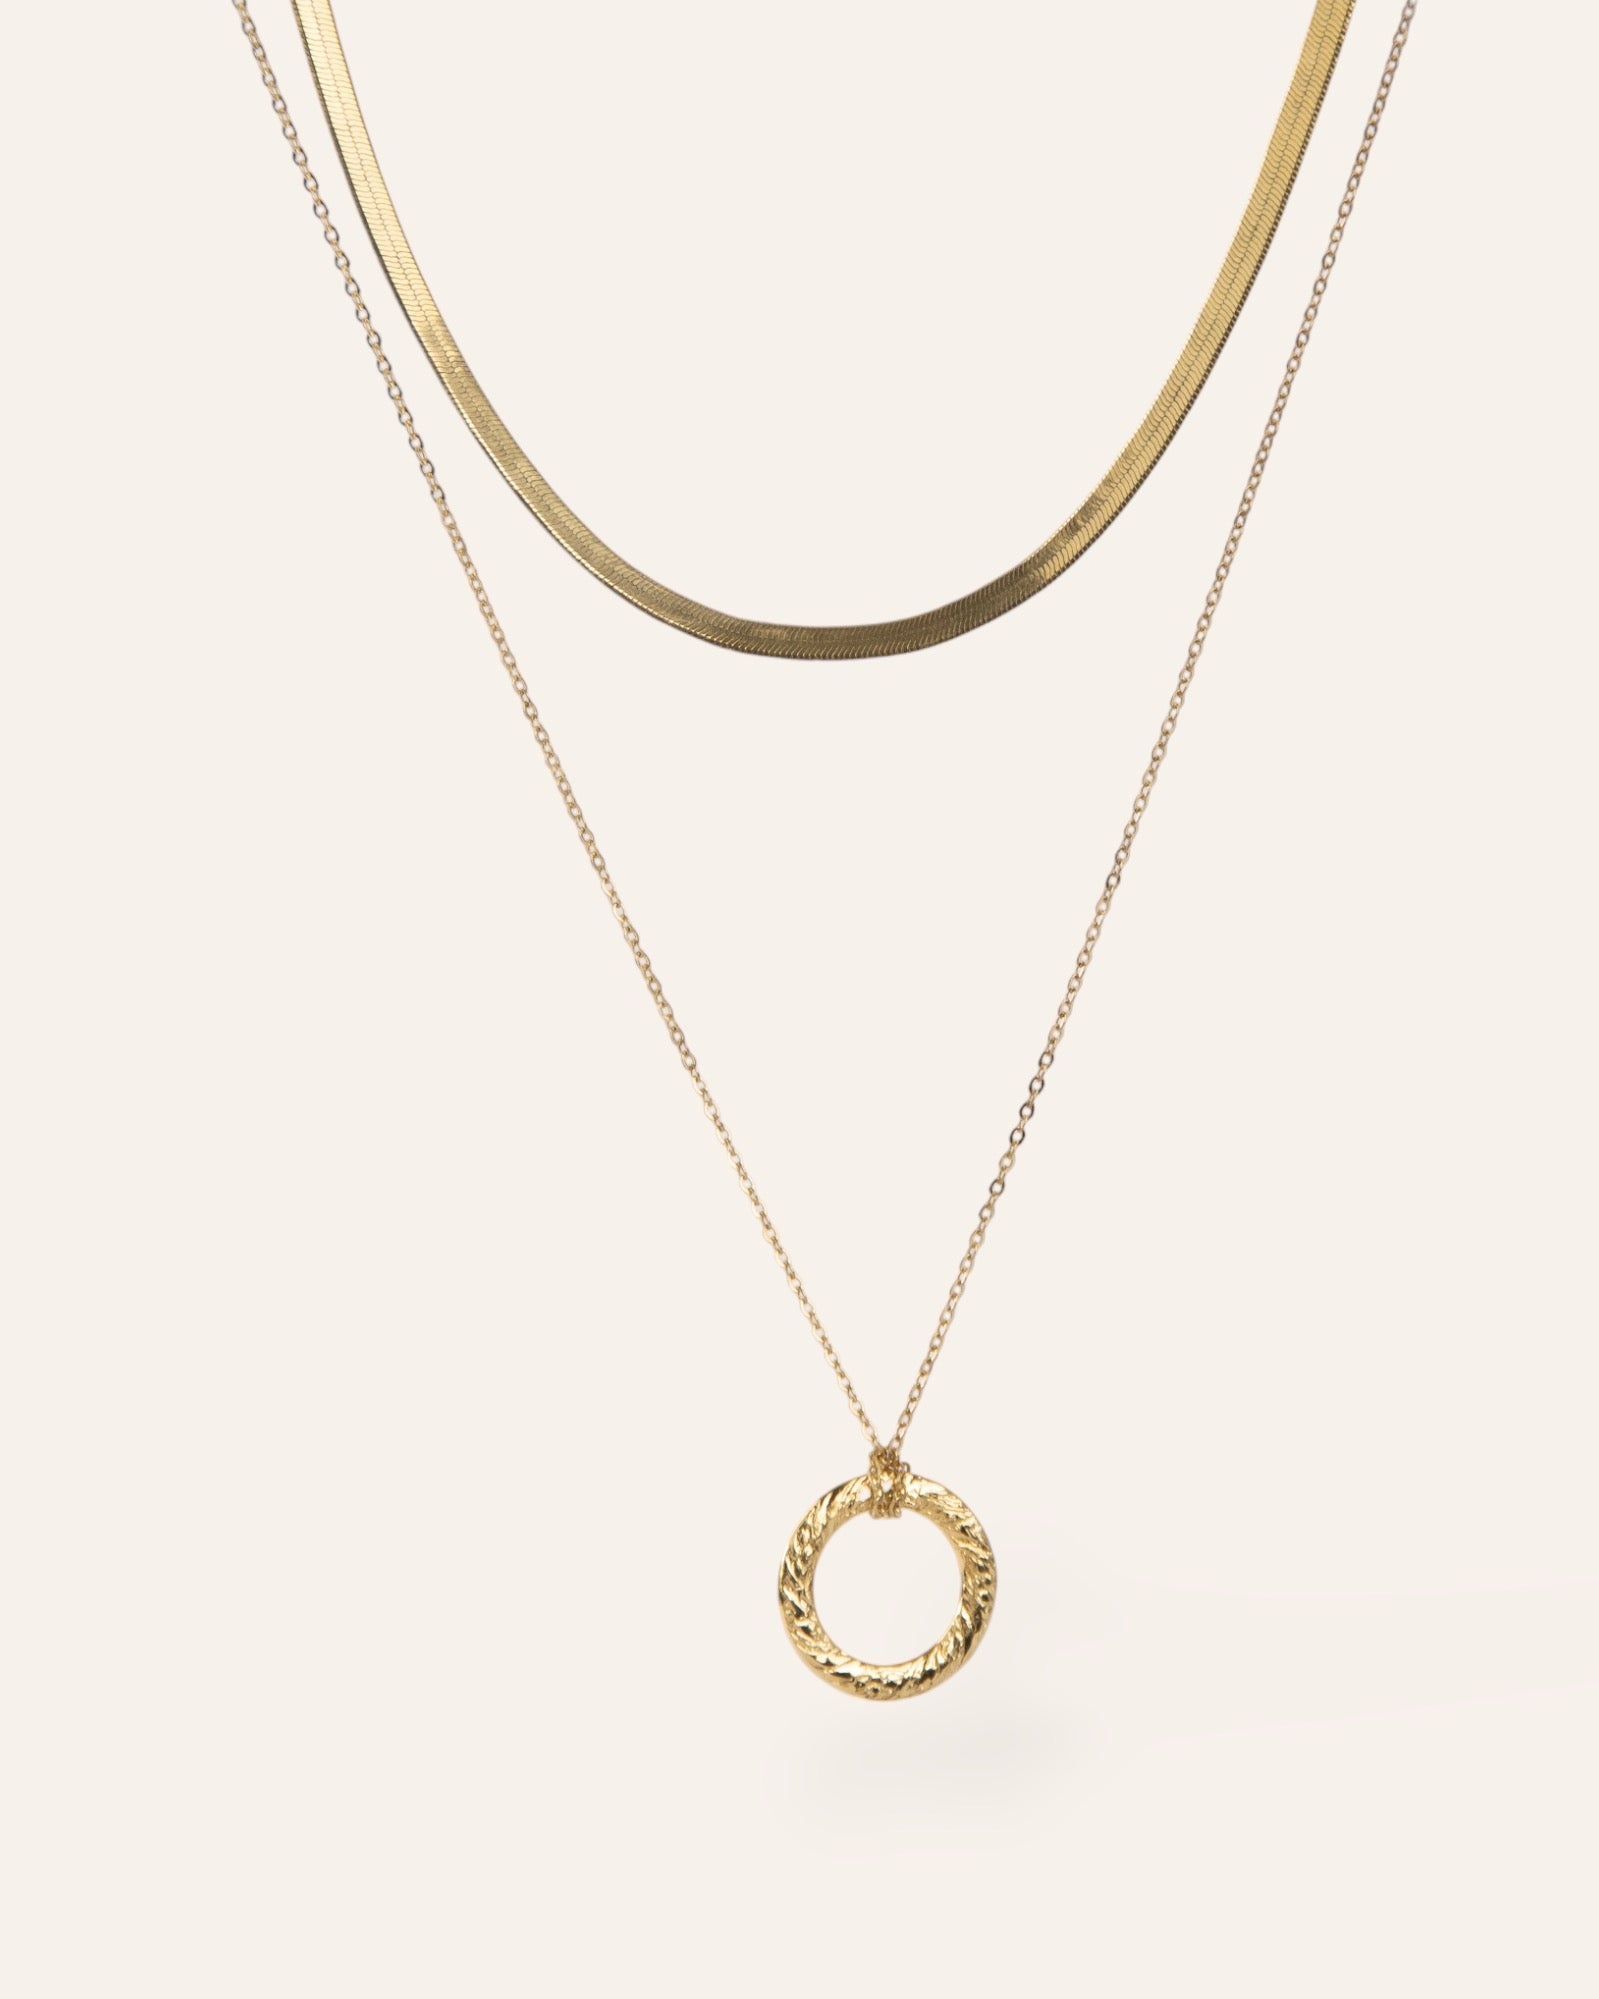 Composition de deux colliers, avec un collier en chaîne plate et un collier en chaîne forçat avec un pendentif en anneau plat texturé au motif de style vintage, en plaqué or 18 carats.